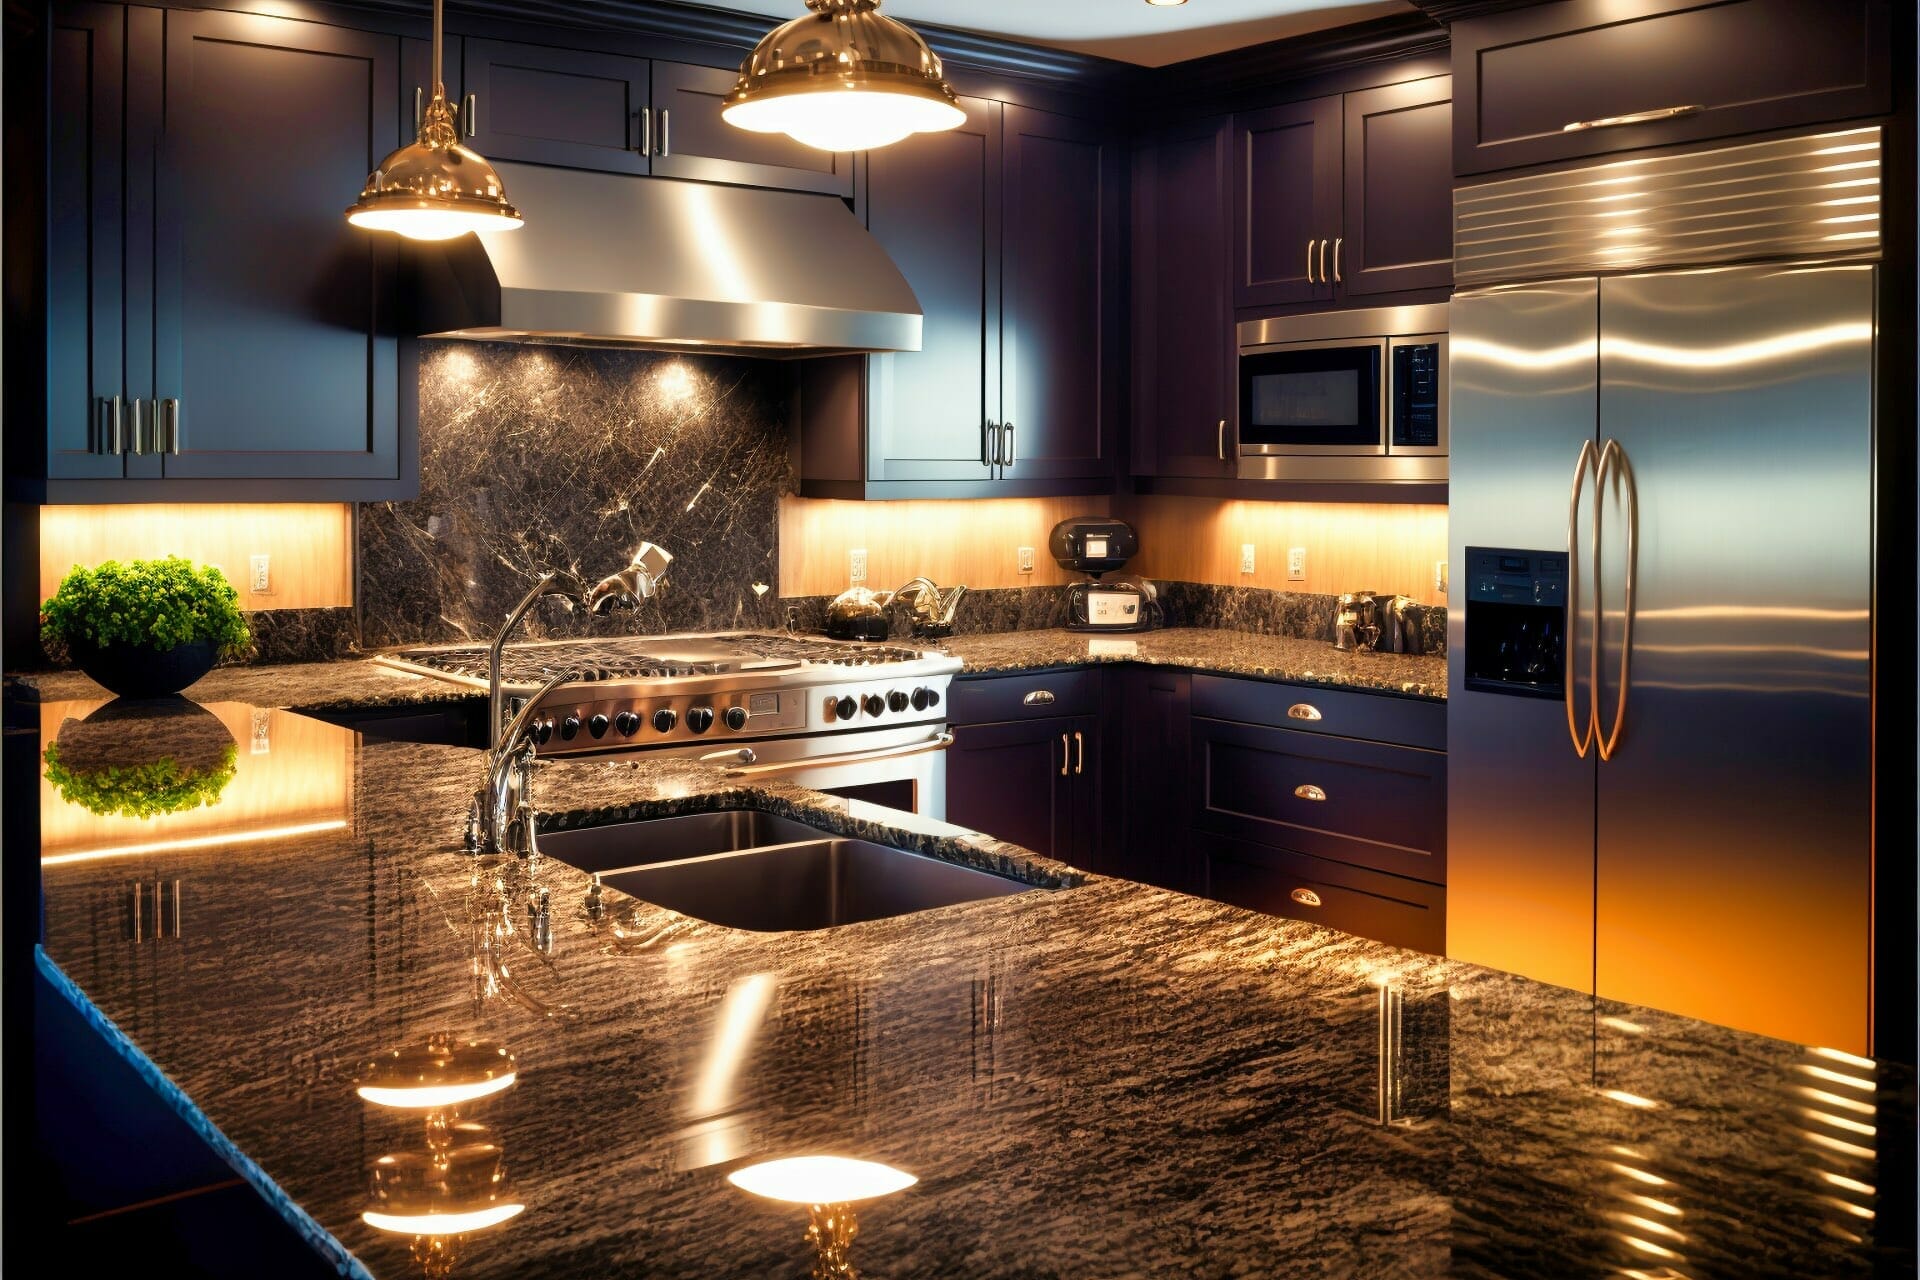 Glistening Granite A Modern Kitchen With A Sleek Black